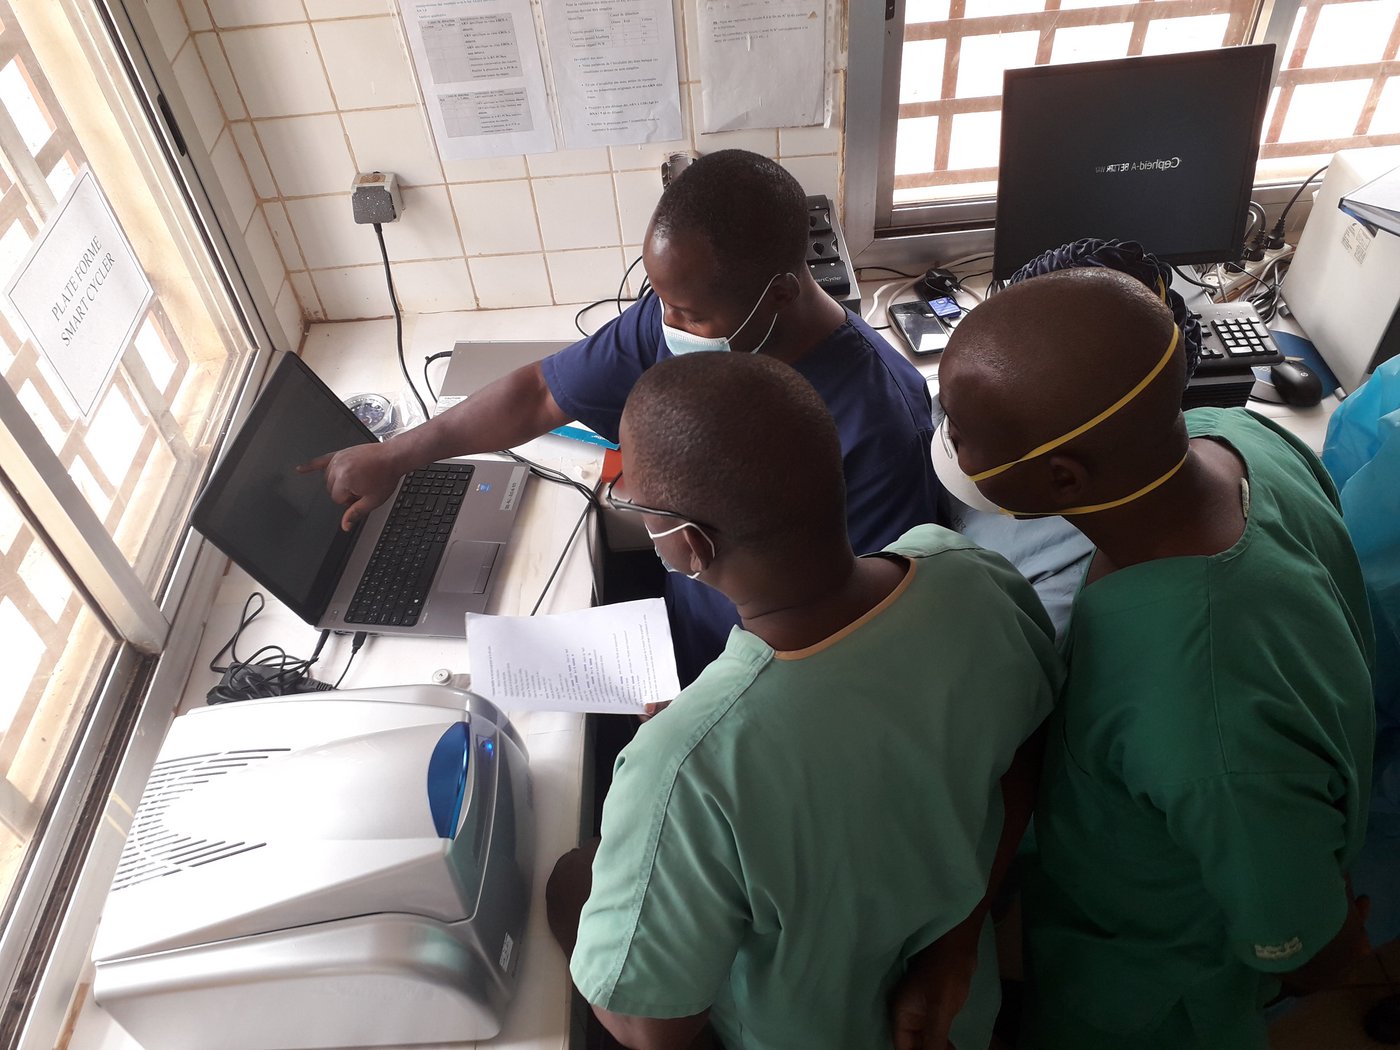 Das Bild zeigt drei afrikanische Forschende in einer Laborsituationvor einem Computer